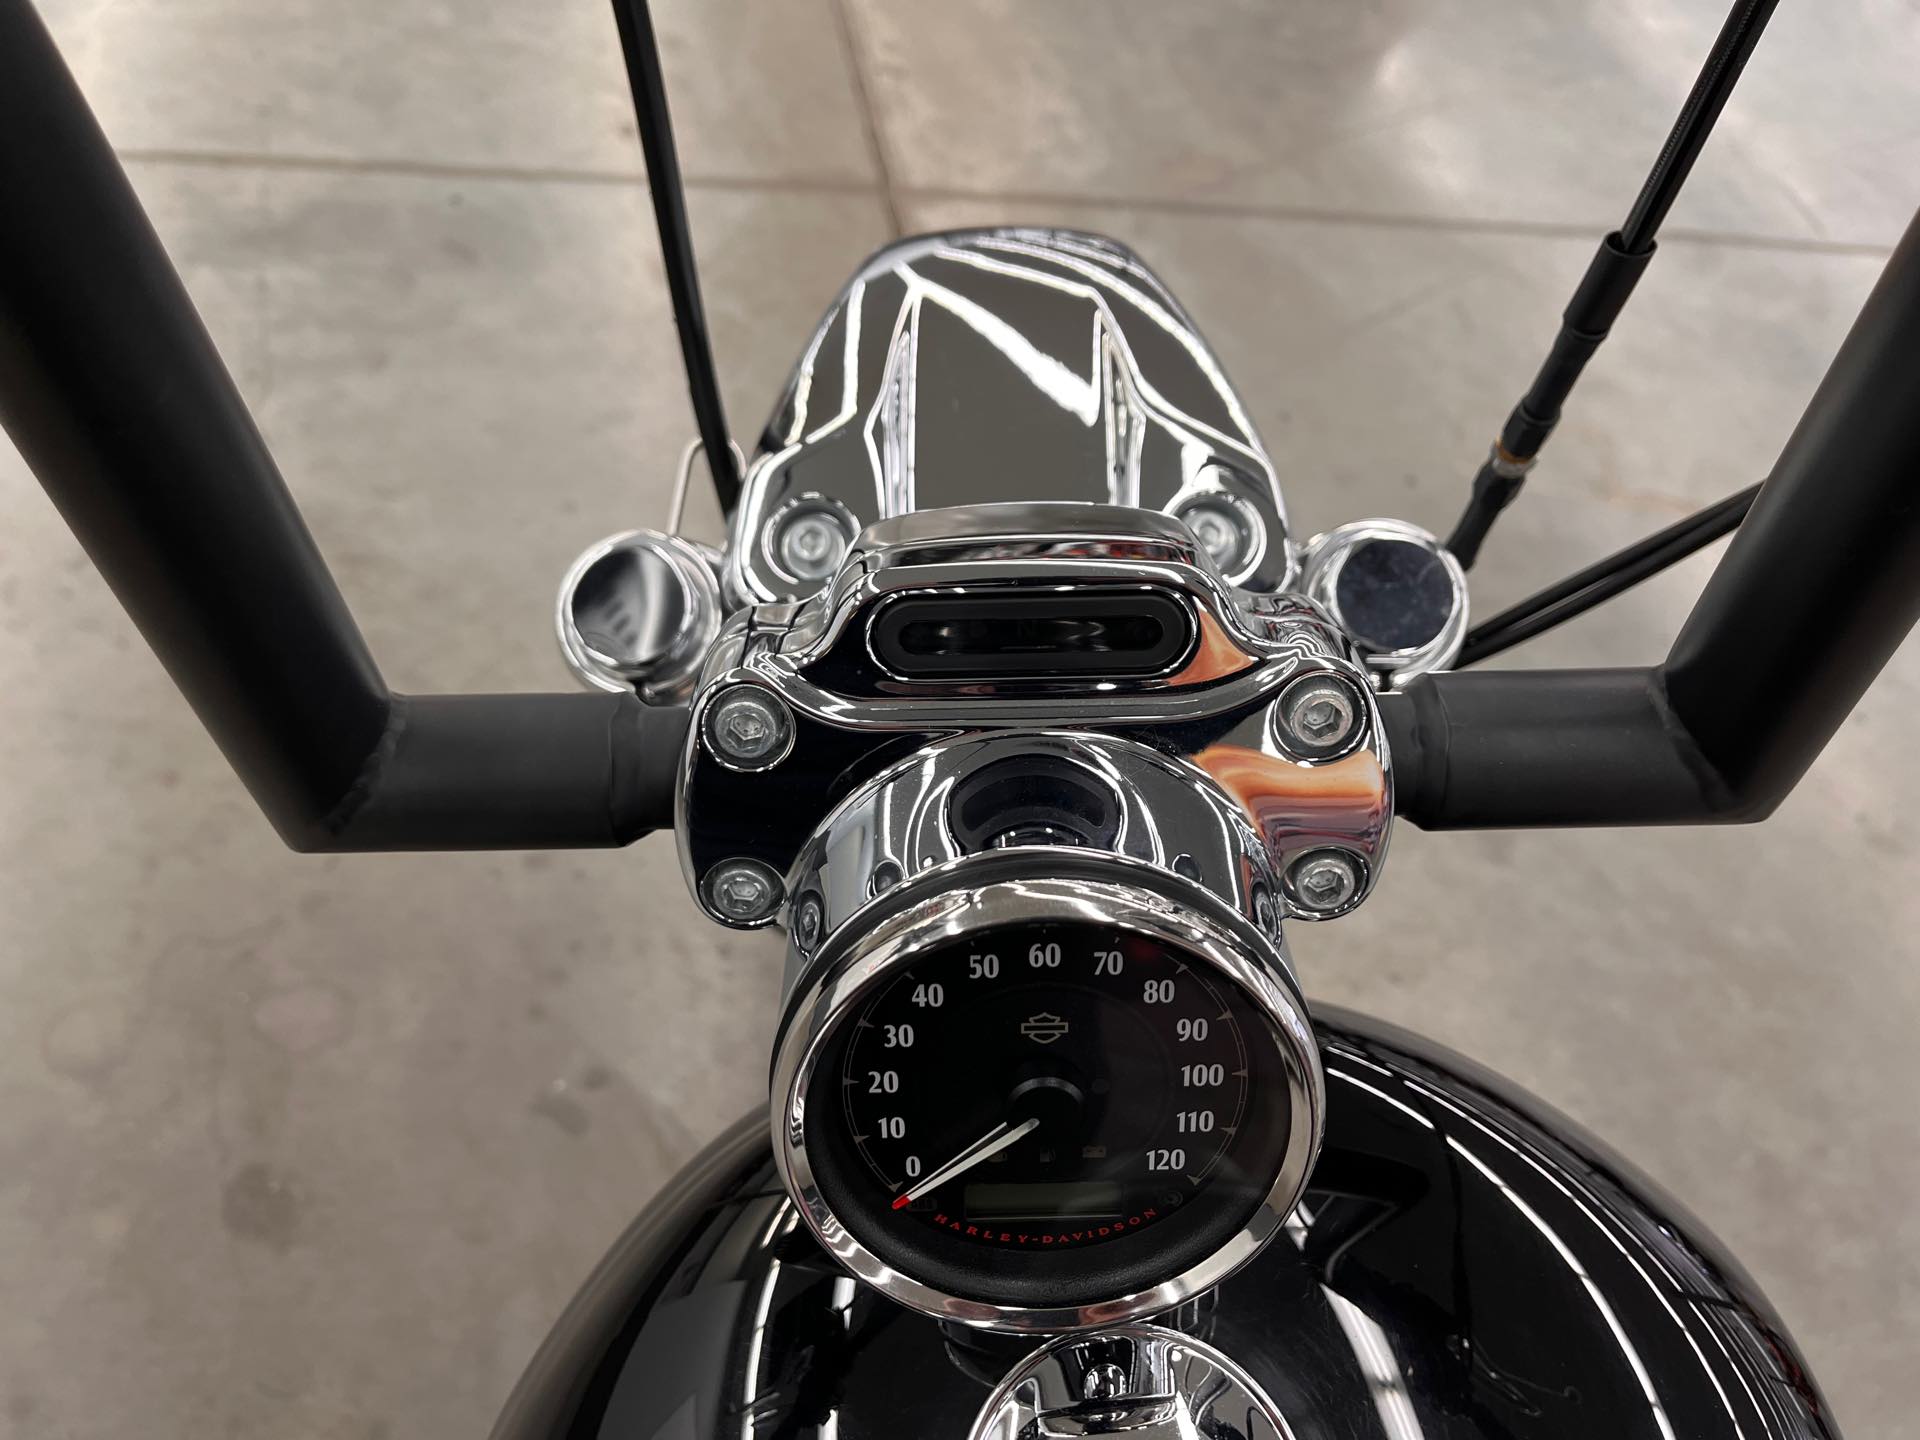 2017 Harley-Davidson Sportster 1200 Custom at Aces Motorcycles - Denver